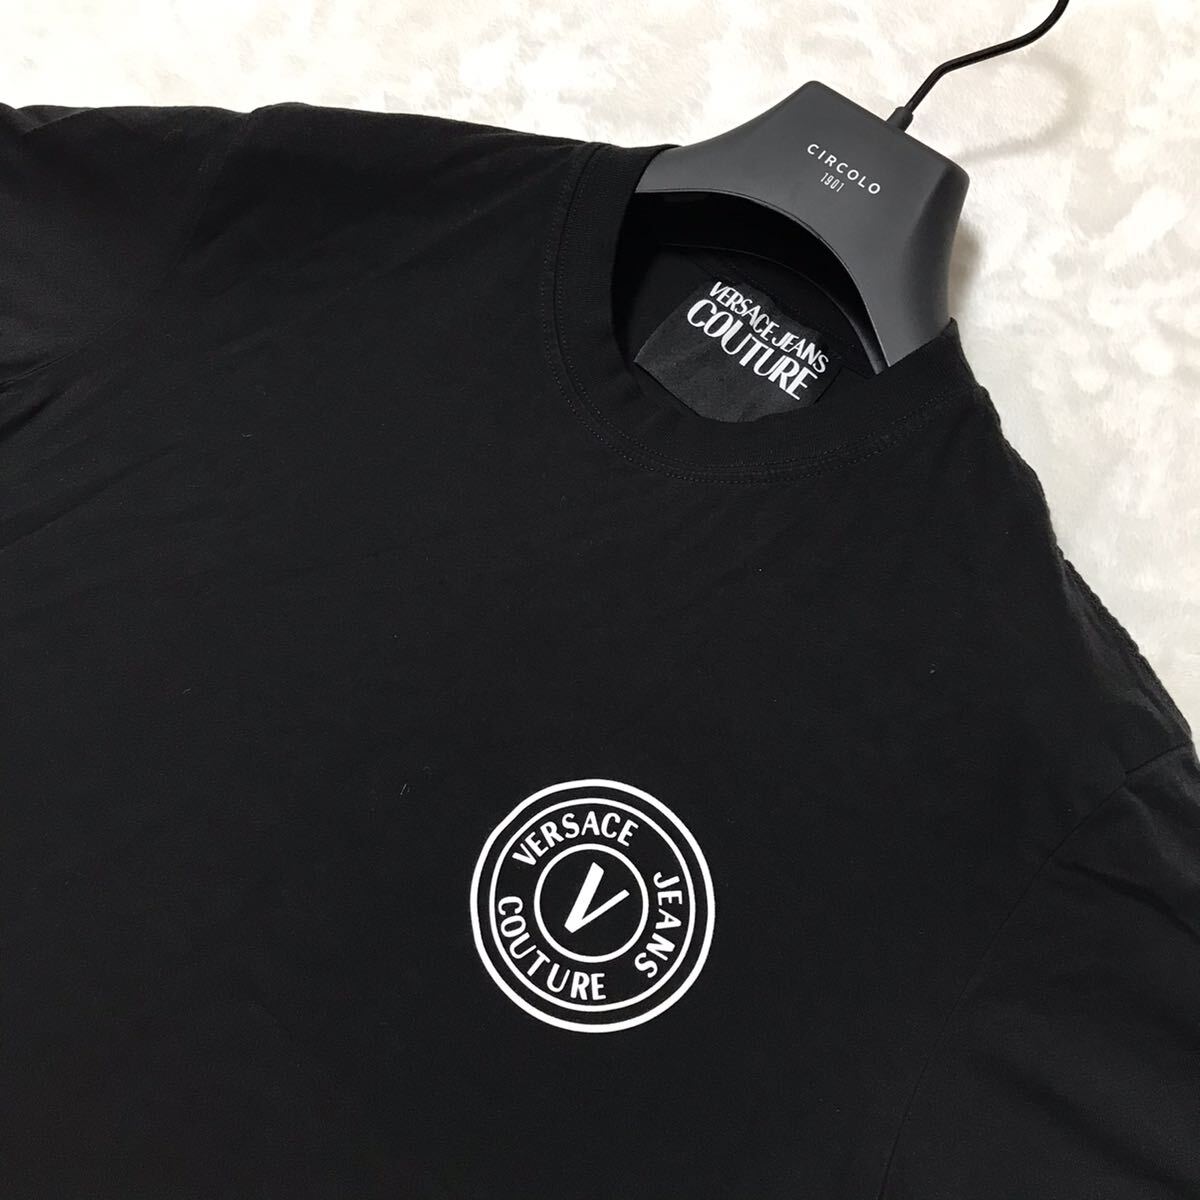 VERSACE JEANS COUTURE рубашка с коротким рукавом футболка размер M черный / чёрный Logo мужской Versace джинсы kchu-ru cut and sewn 